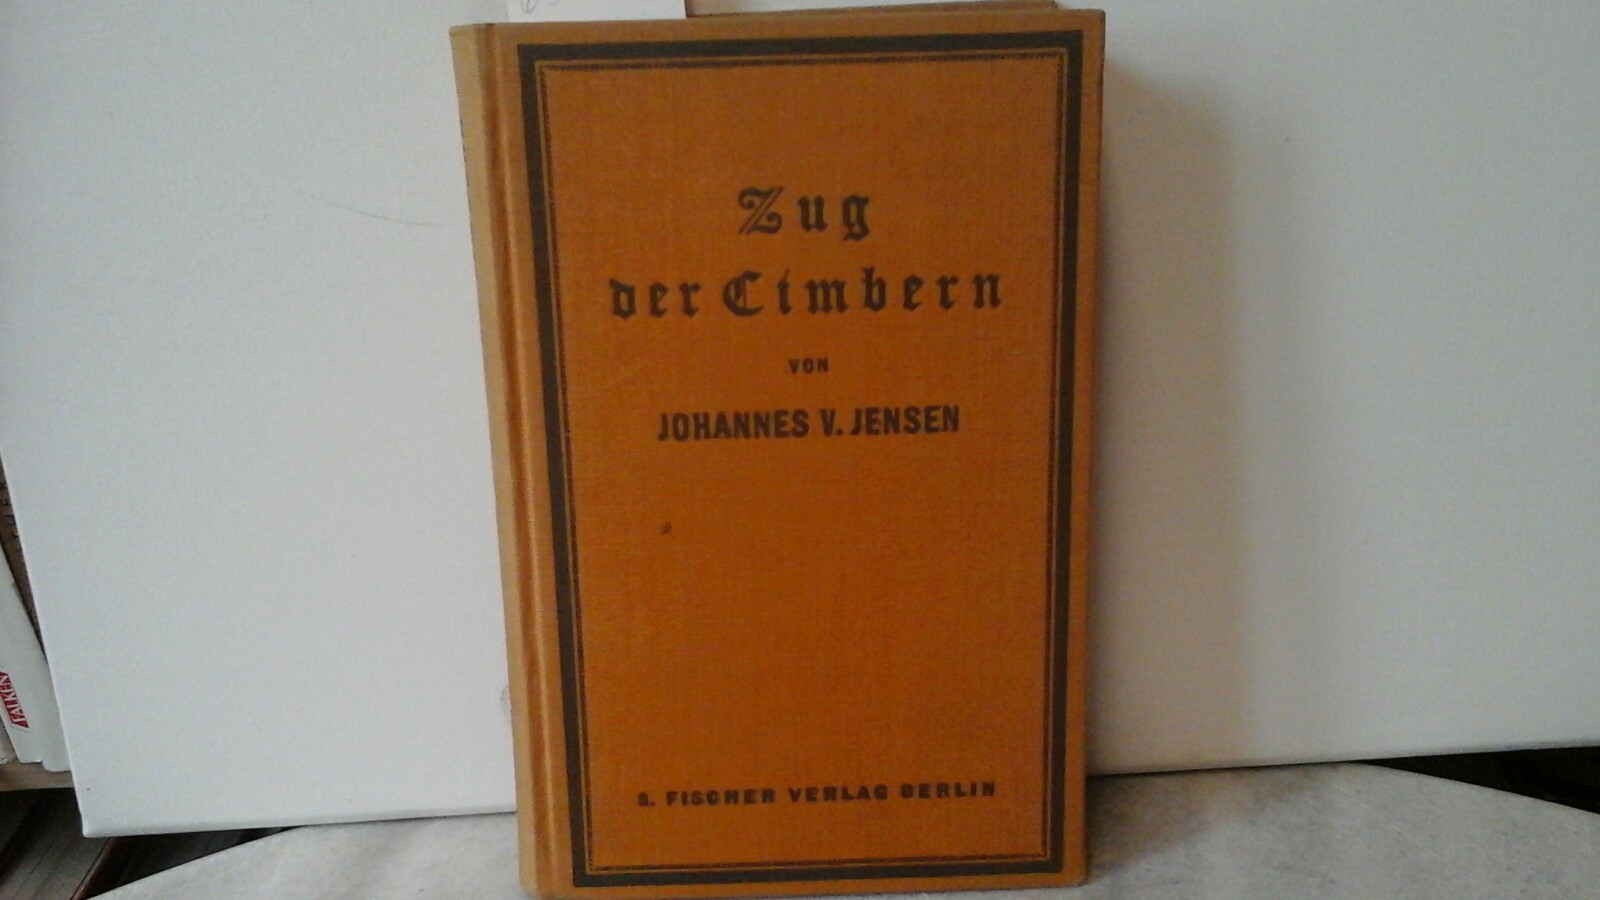 JENSEN, JOHANNES V.: Zug der Cimbern. Erste bis fnfte Auflage.